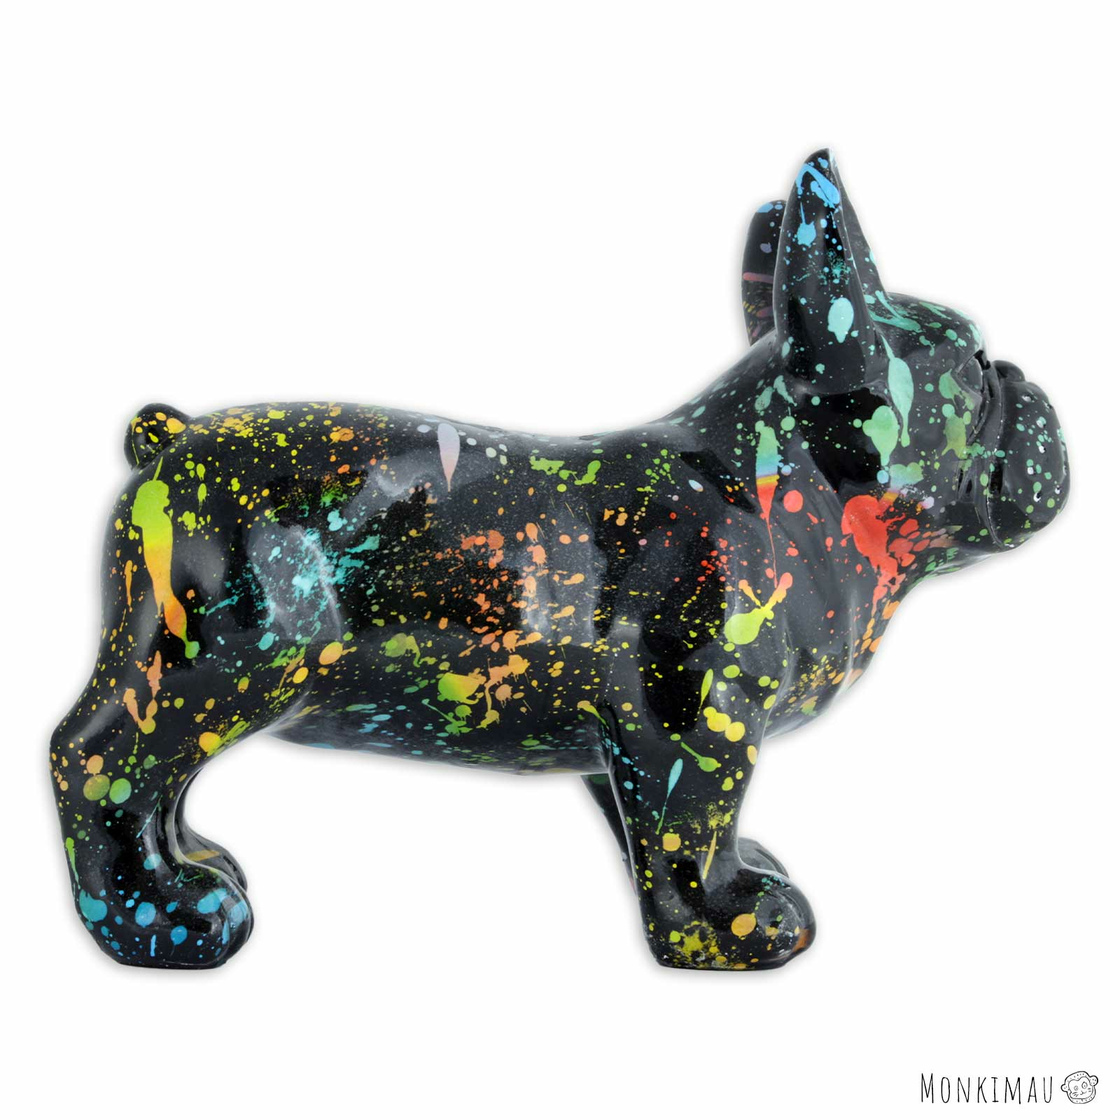 Französische Bulldoggen Figur schwarz/weiß 51cm in Berlin - Spandau